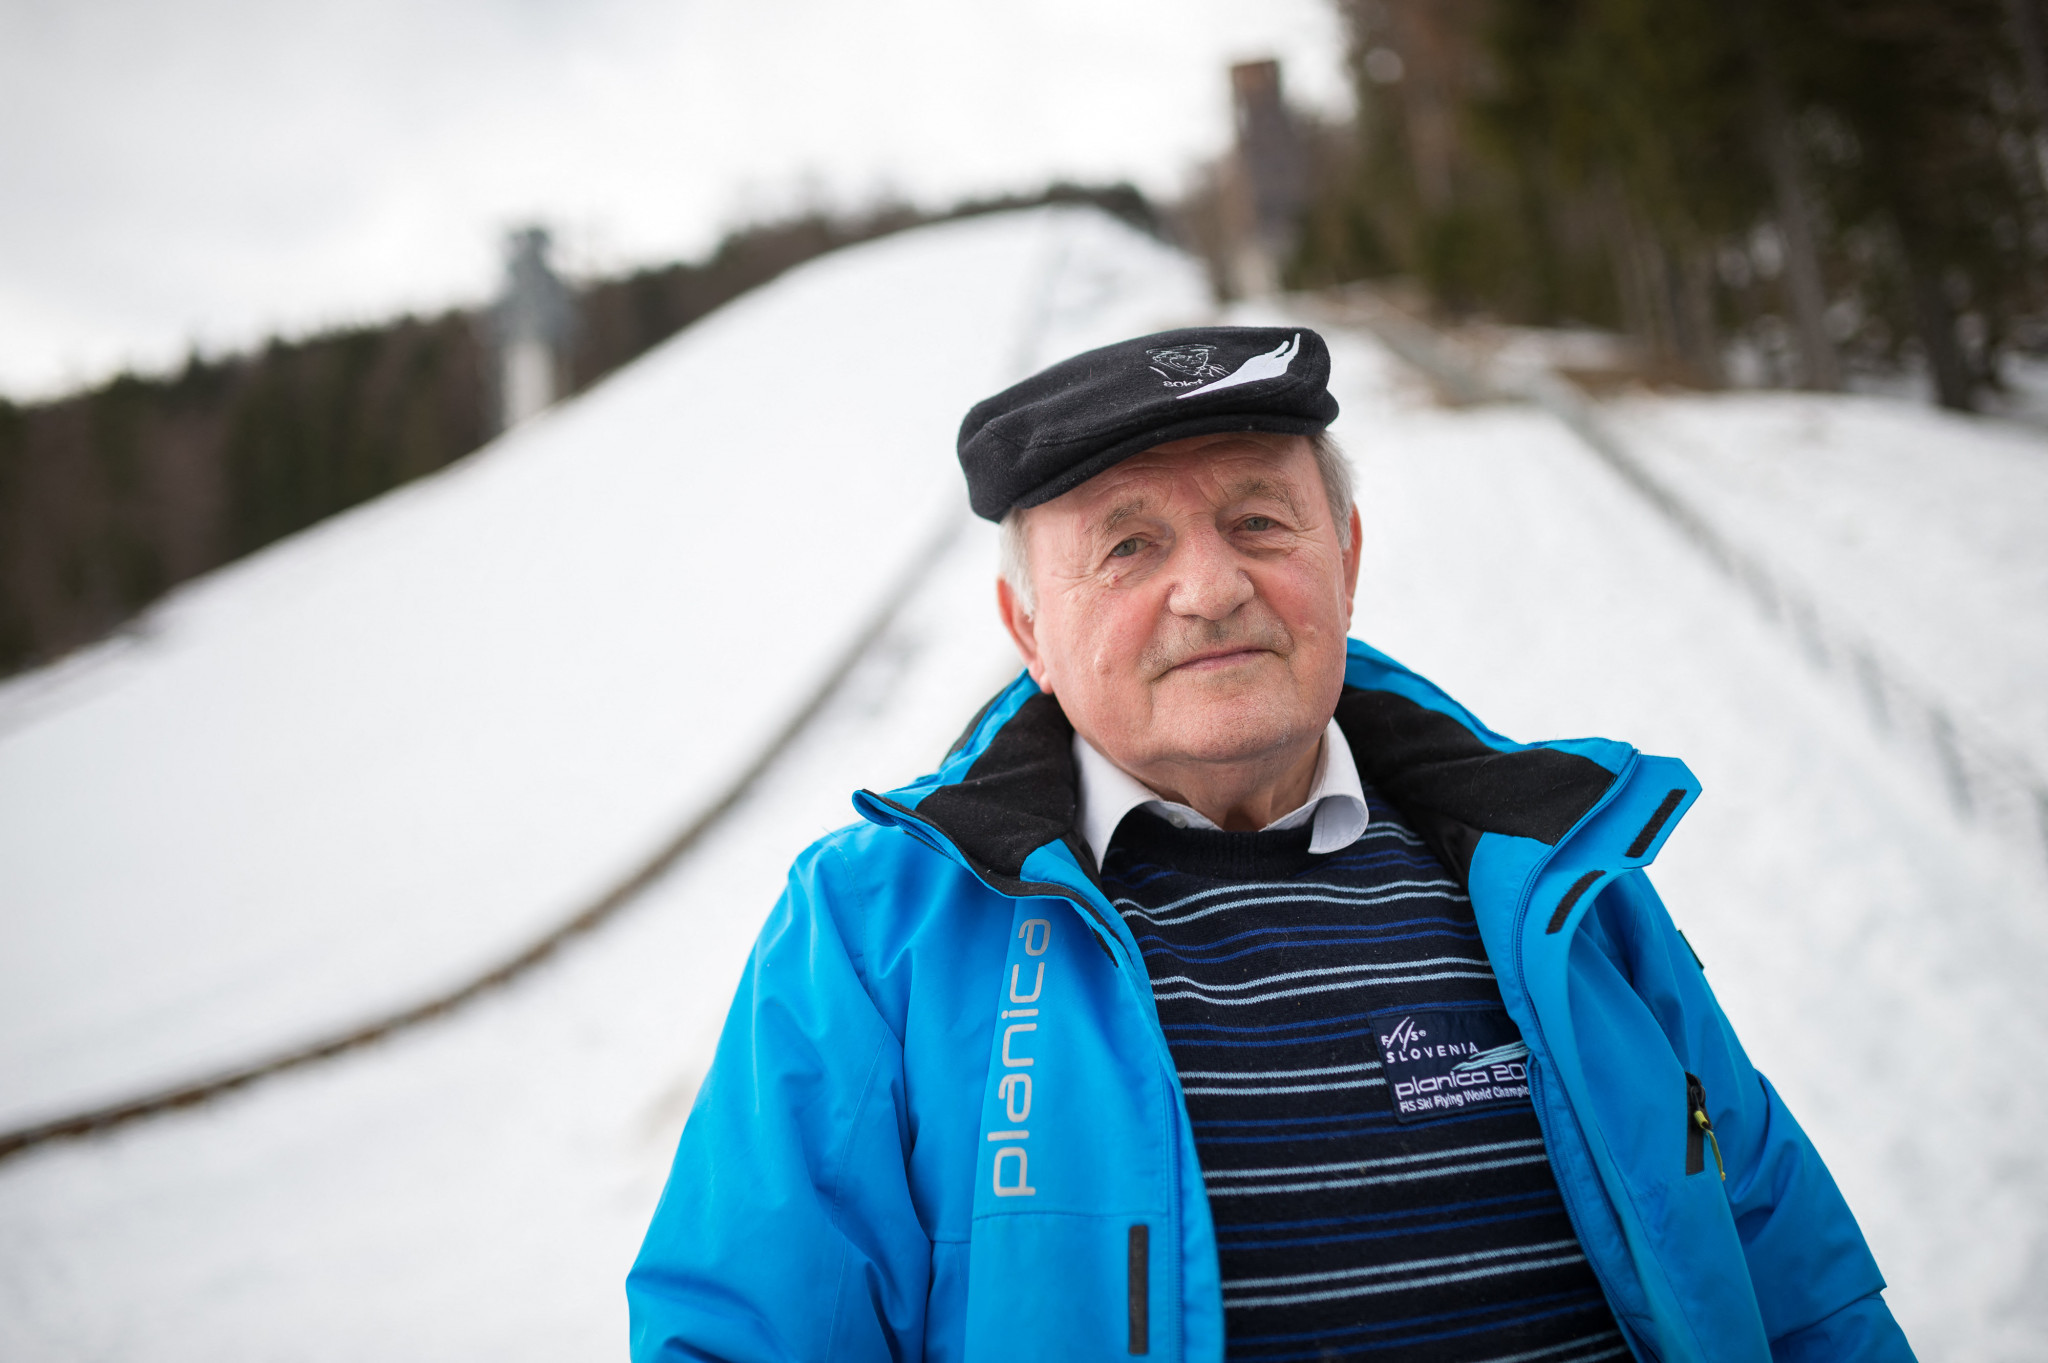 Winter Olympian Gorišek - the pioneer of ski flying - dies aged 89